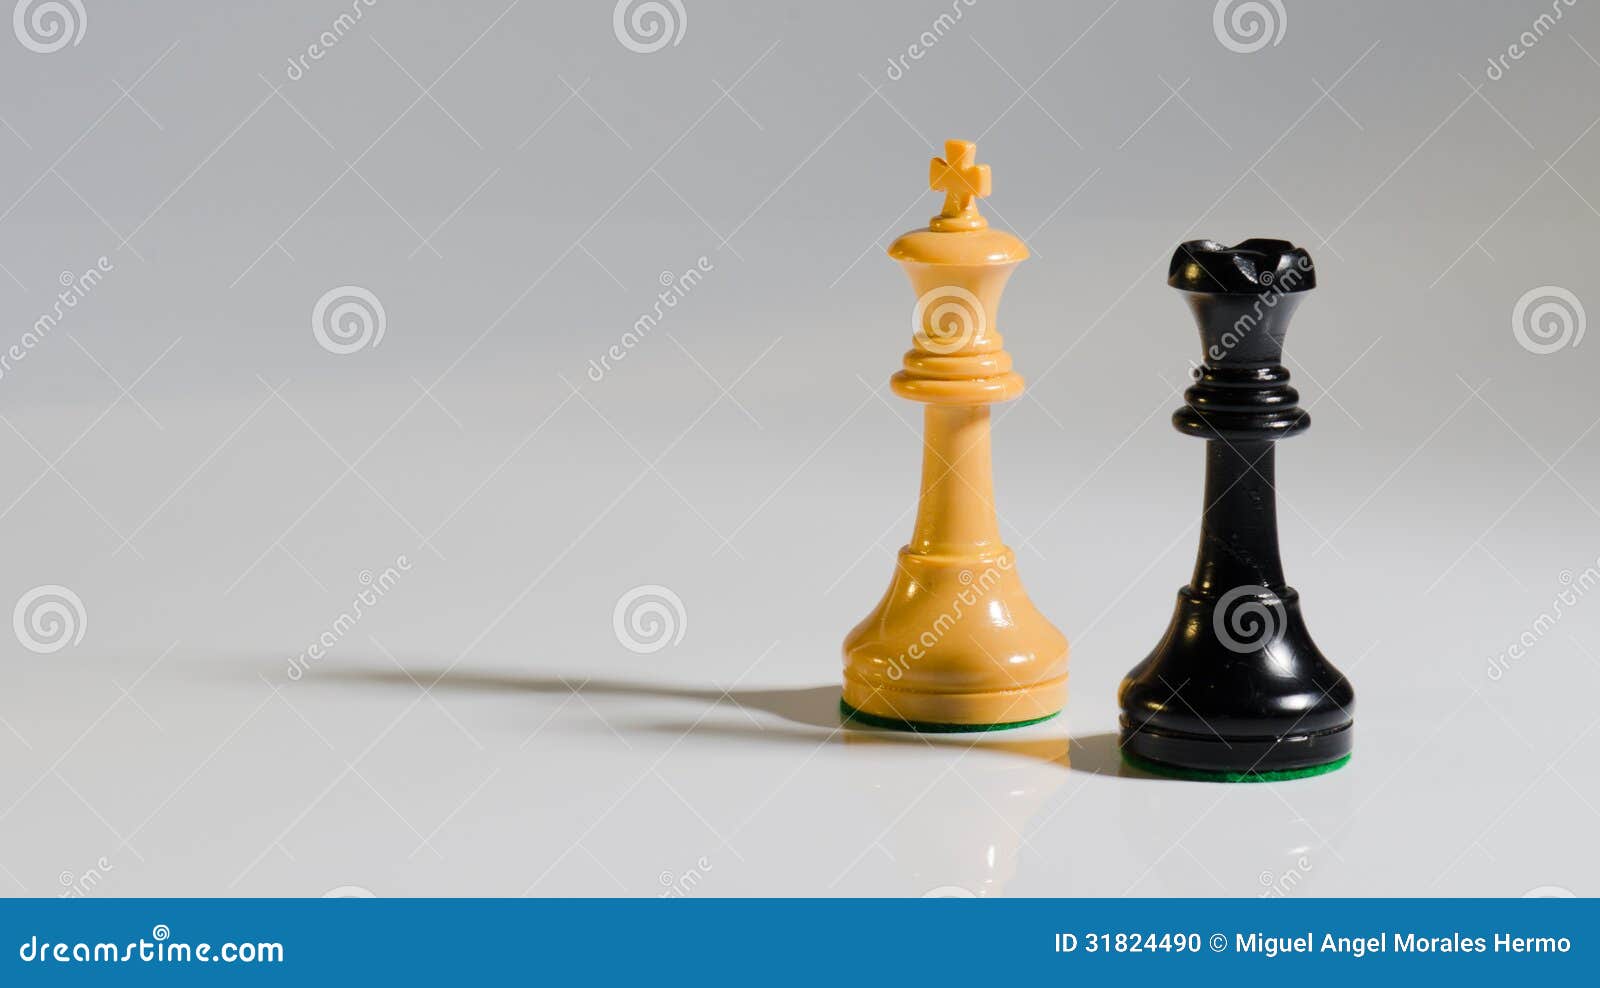 Foto de Imagem Preta Rei Xadrez Real Isolado Em Fundo Branco e mais fotos  de stock de Rainha - Peça de xadrez - iStock